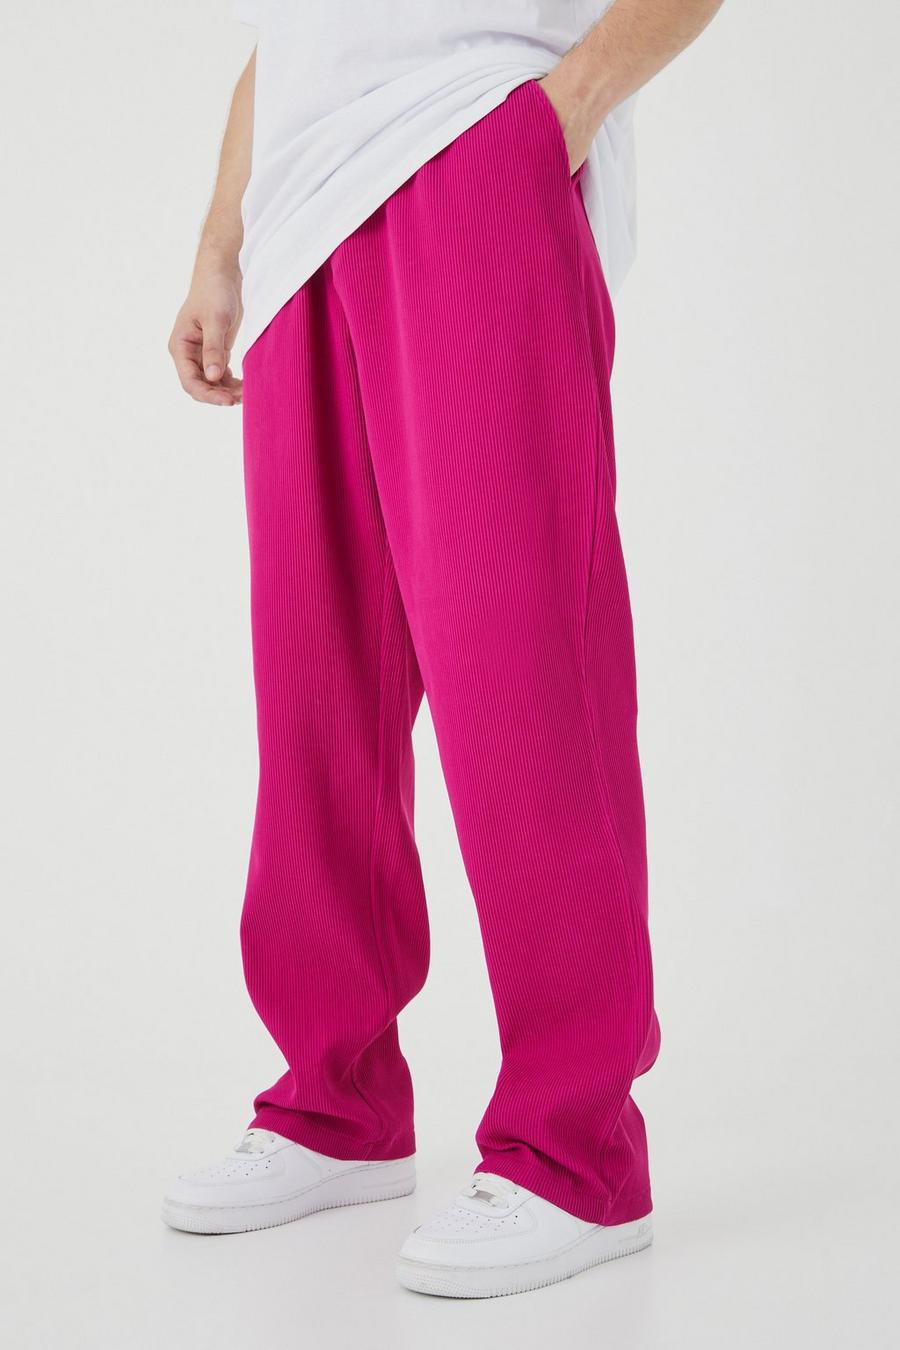 Pantaloni Tall rilassati con pieghe e vita elasticizzata, Pink rosa